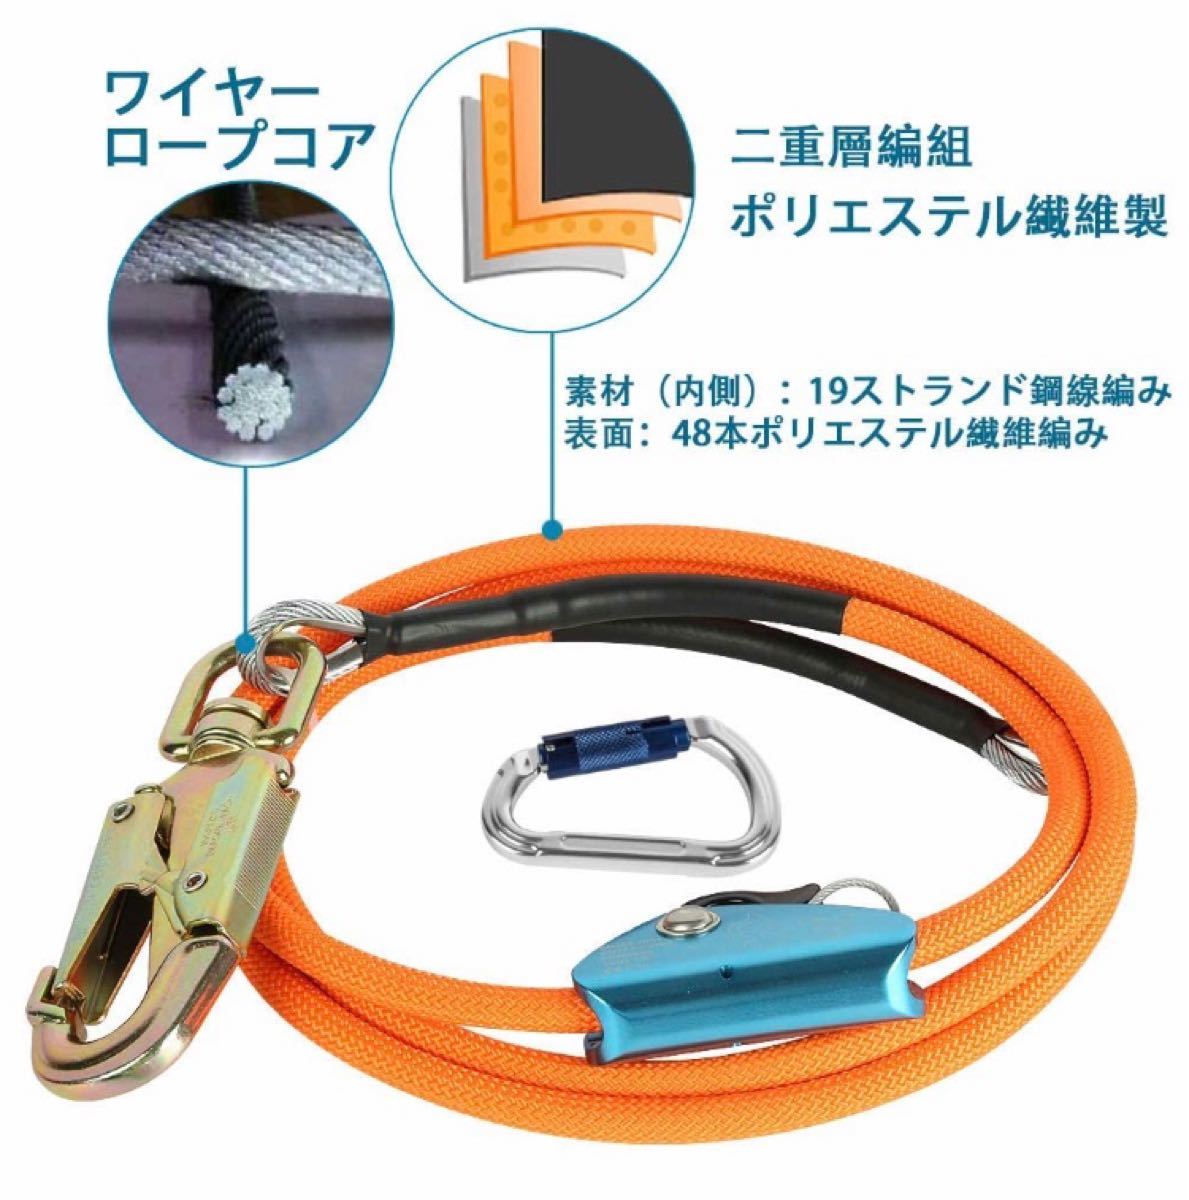 安全ロープ ランヤードワークポジショニングロープハーネス安全帯ツリークライミング